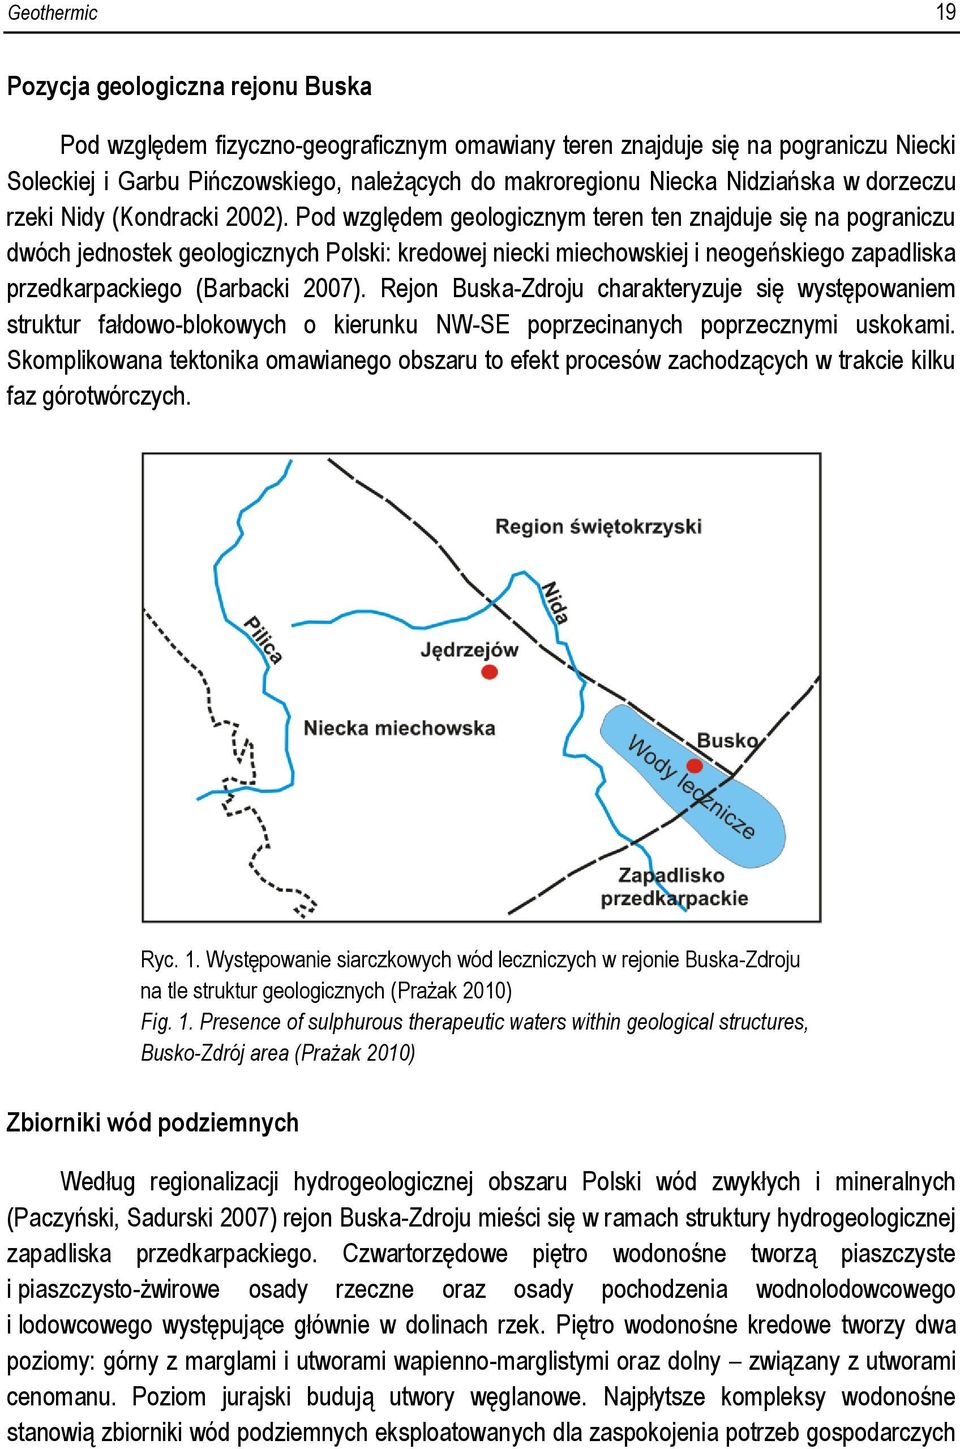 Pod względem geologicznym teren ten znajduje się na pograniczu dwóch jednostek geologicznych Polski: kredowej niecki miechowskiej i neogeńskiego zapadliska przedkarpackiego (Barbacki 2007).